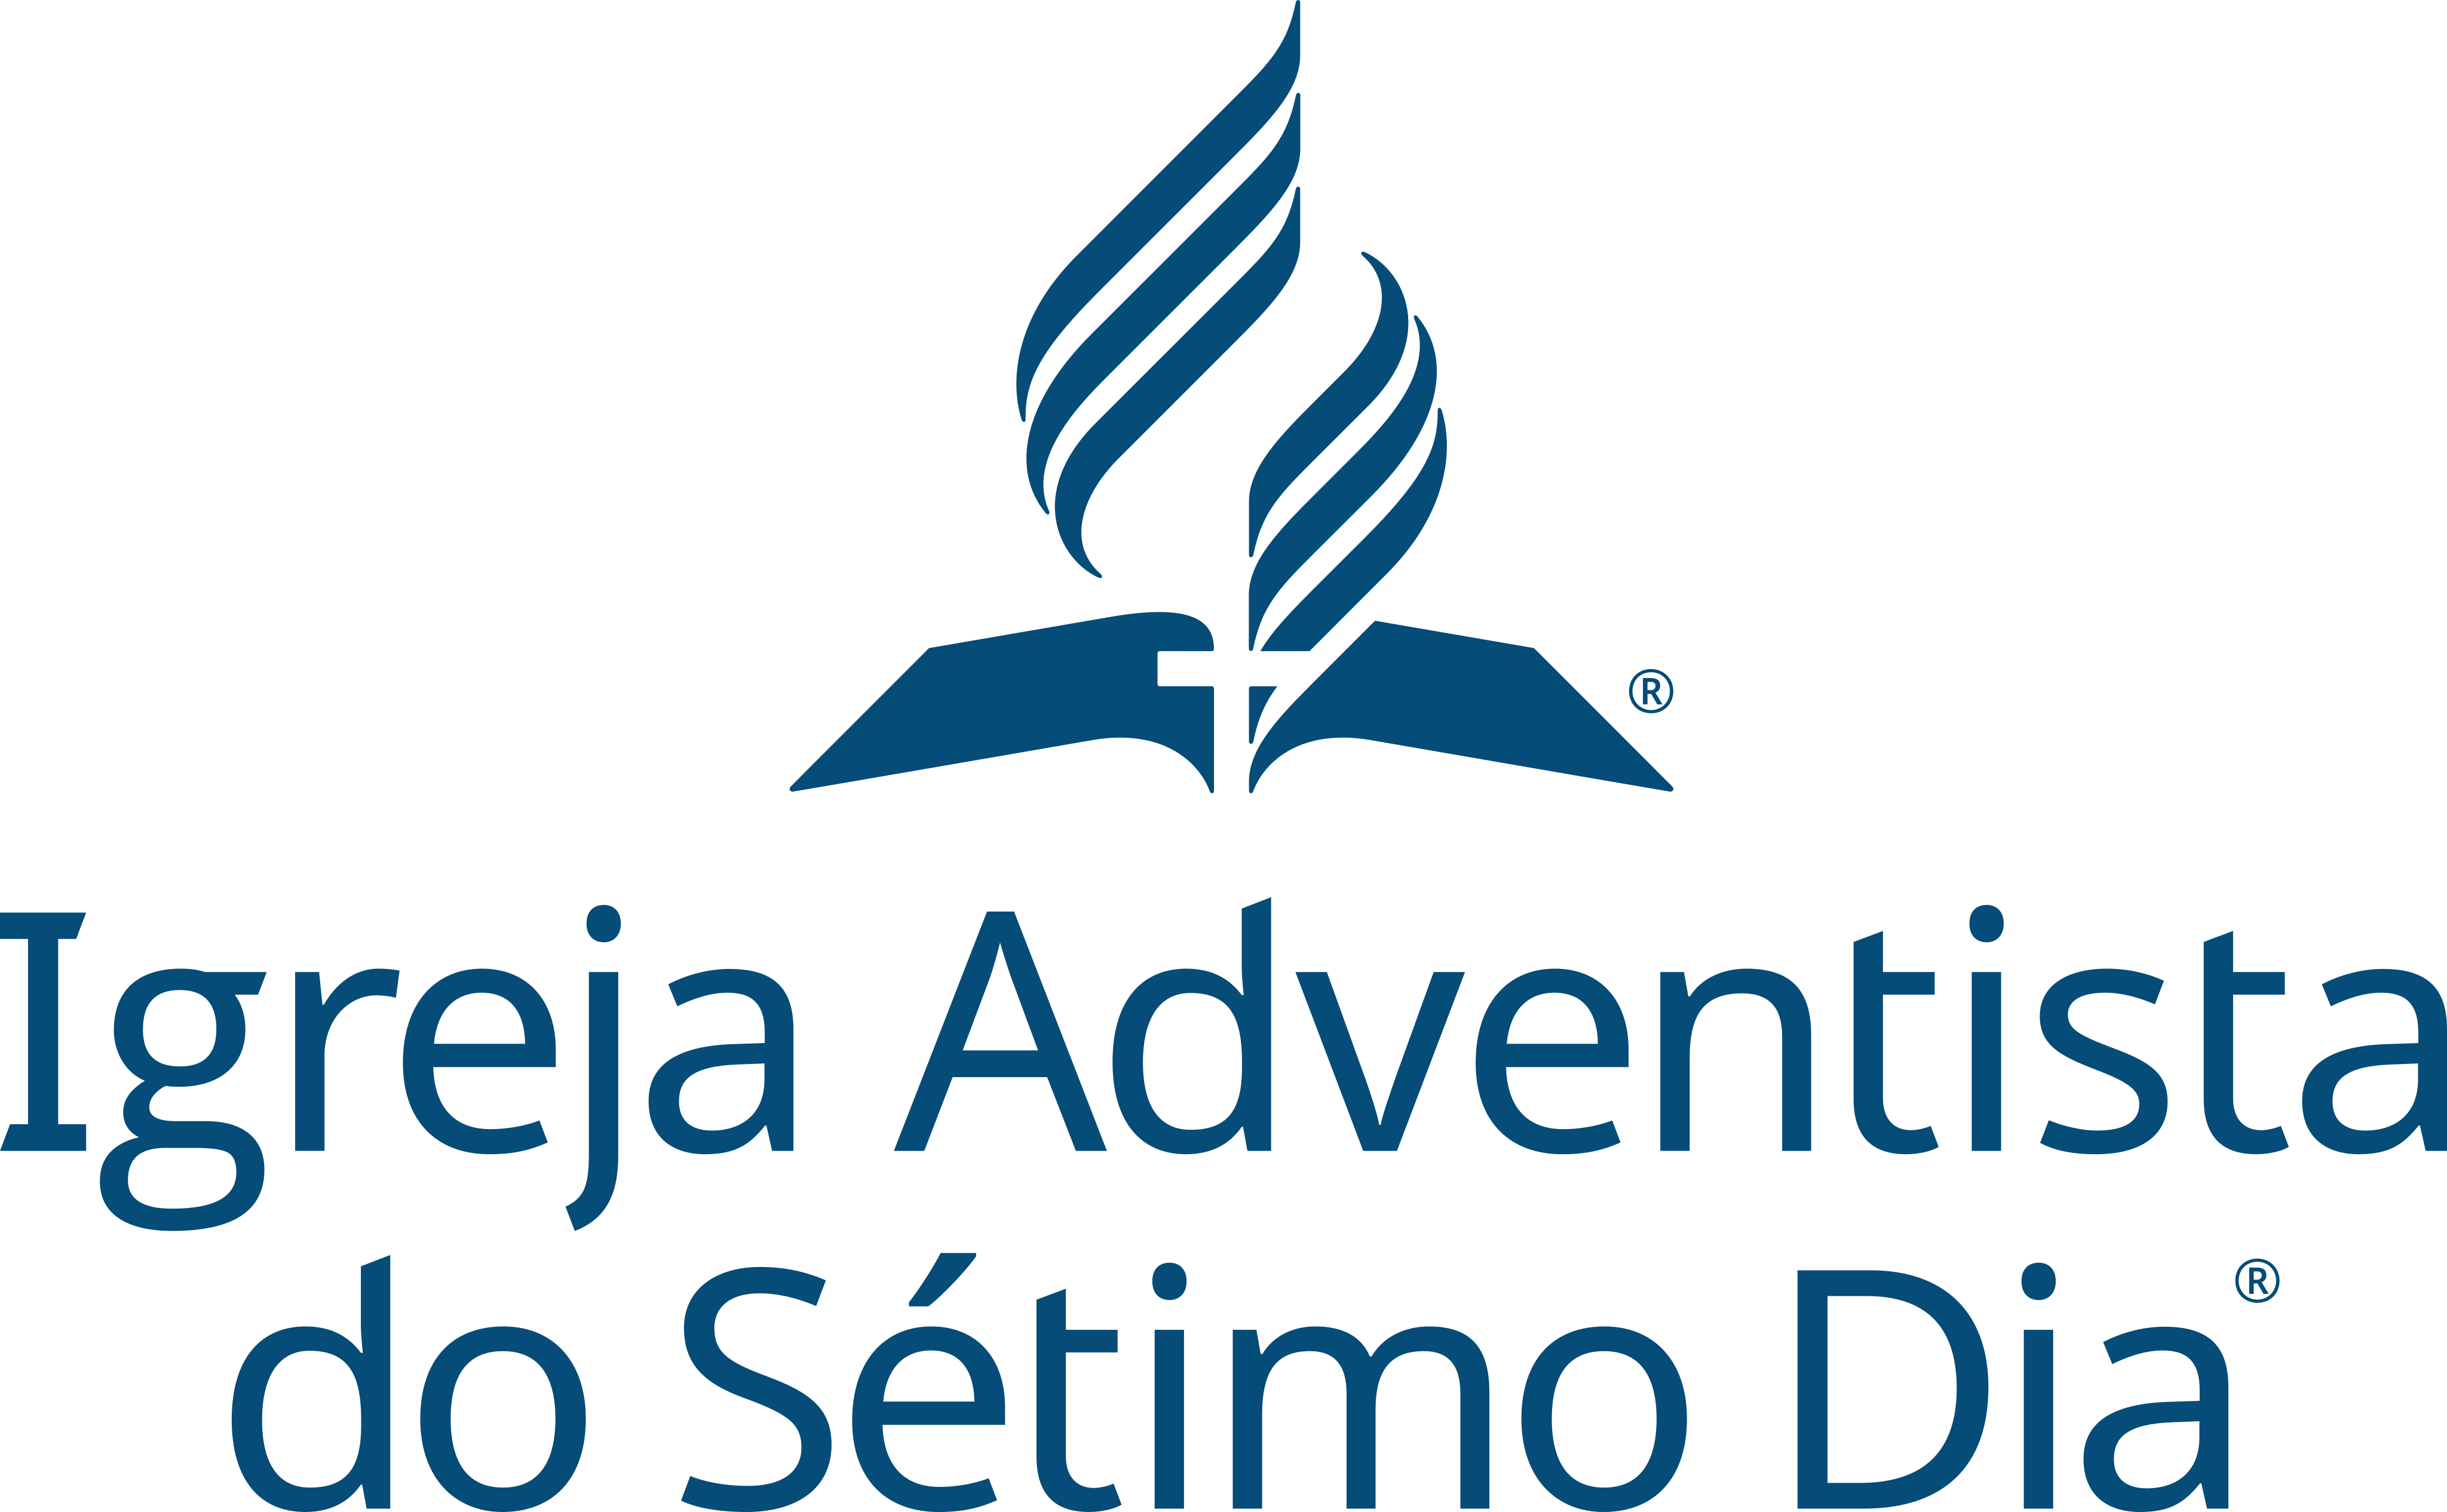 Igreja Adventista do Sétimo Dia Logo.